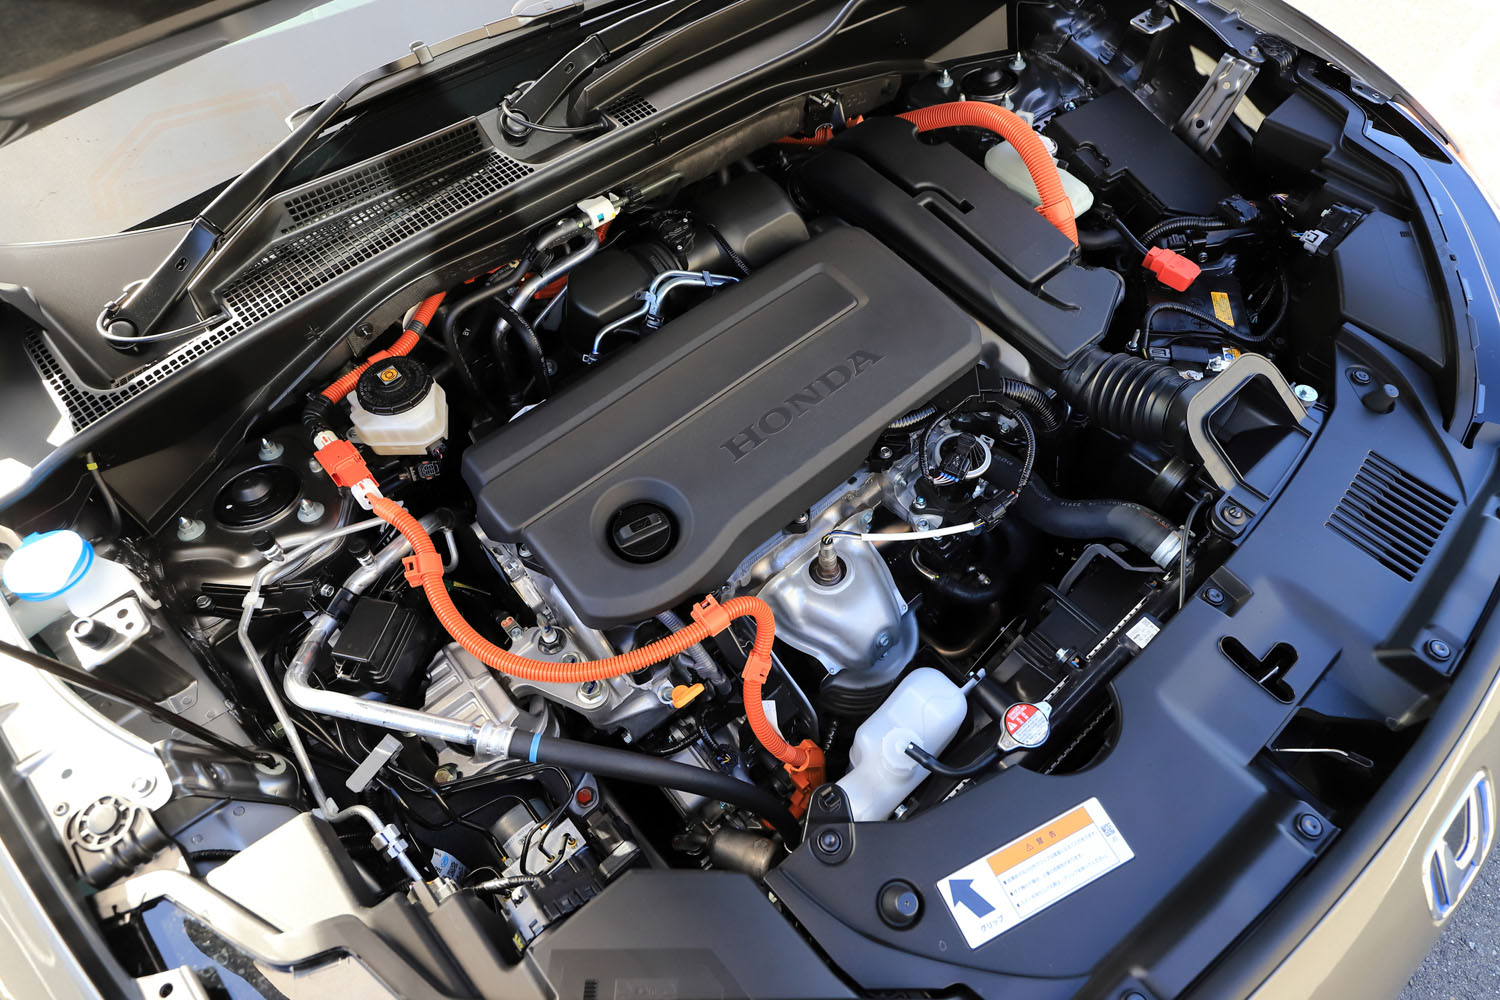 パワーユニットの設定は2種類。「e：HEV」には2モーター式のハイブリッドユニットと2リッター自然吸気ガソリンエンジンが搭載され、FF車で22.0～22.1km/リッター、4WD車で21.5～21.7km/リッターの燃費を実現している（WLTCモード）。